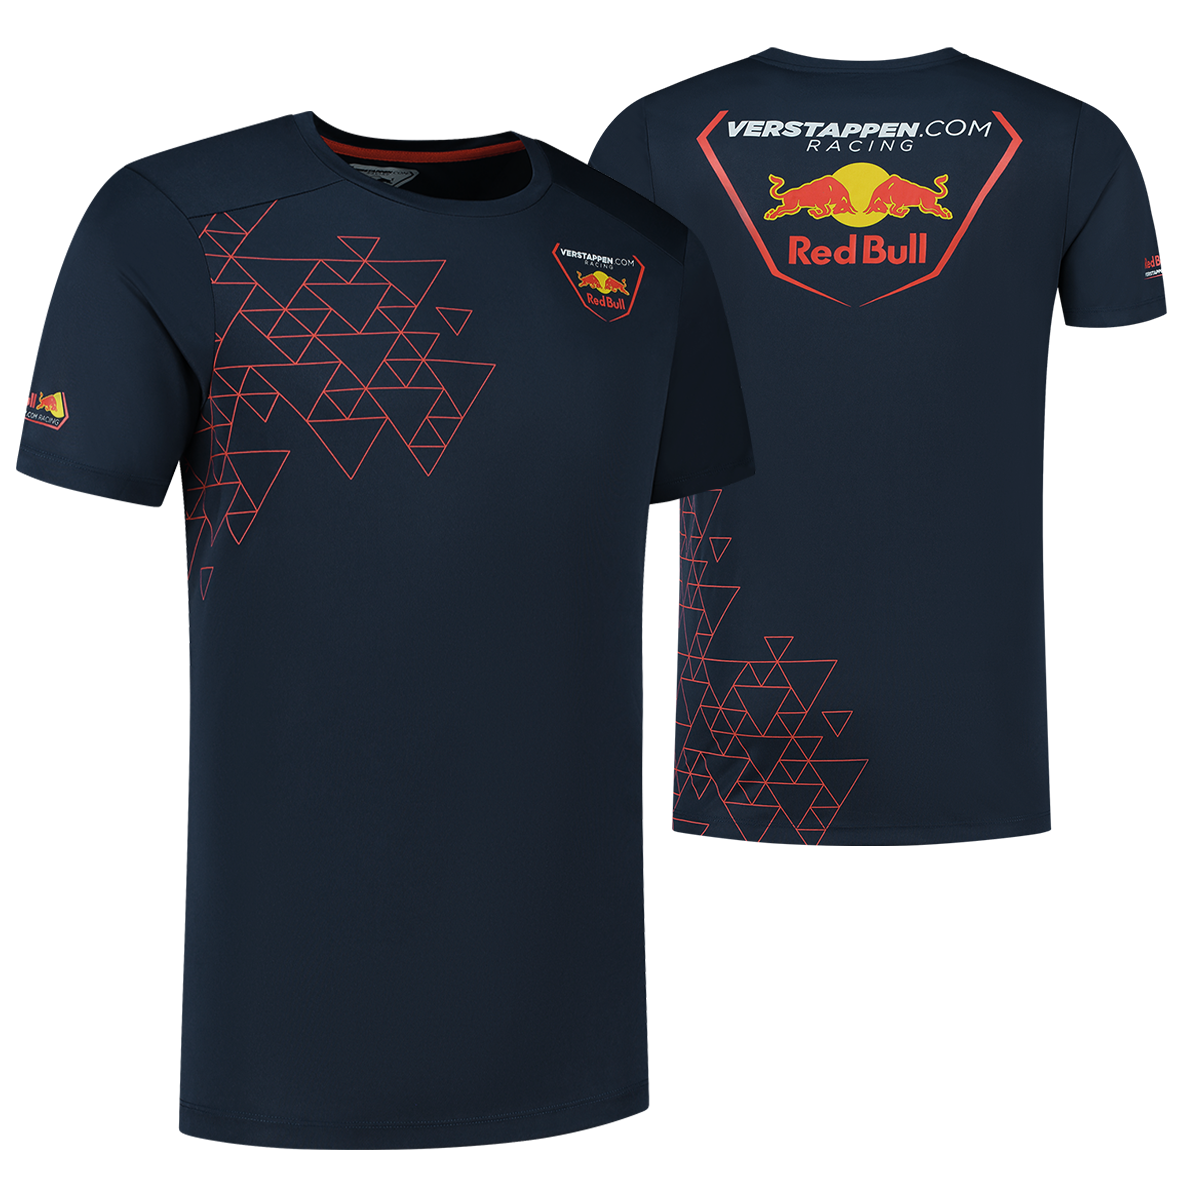 Verstappen.com Racing T-shirt - M - Max Verstappen